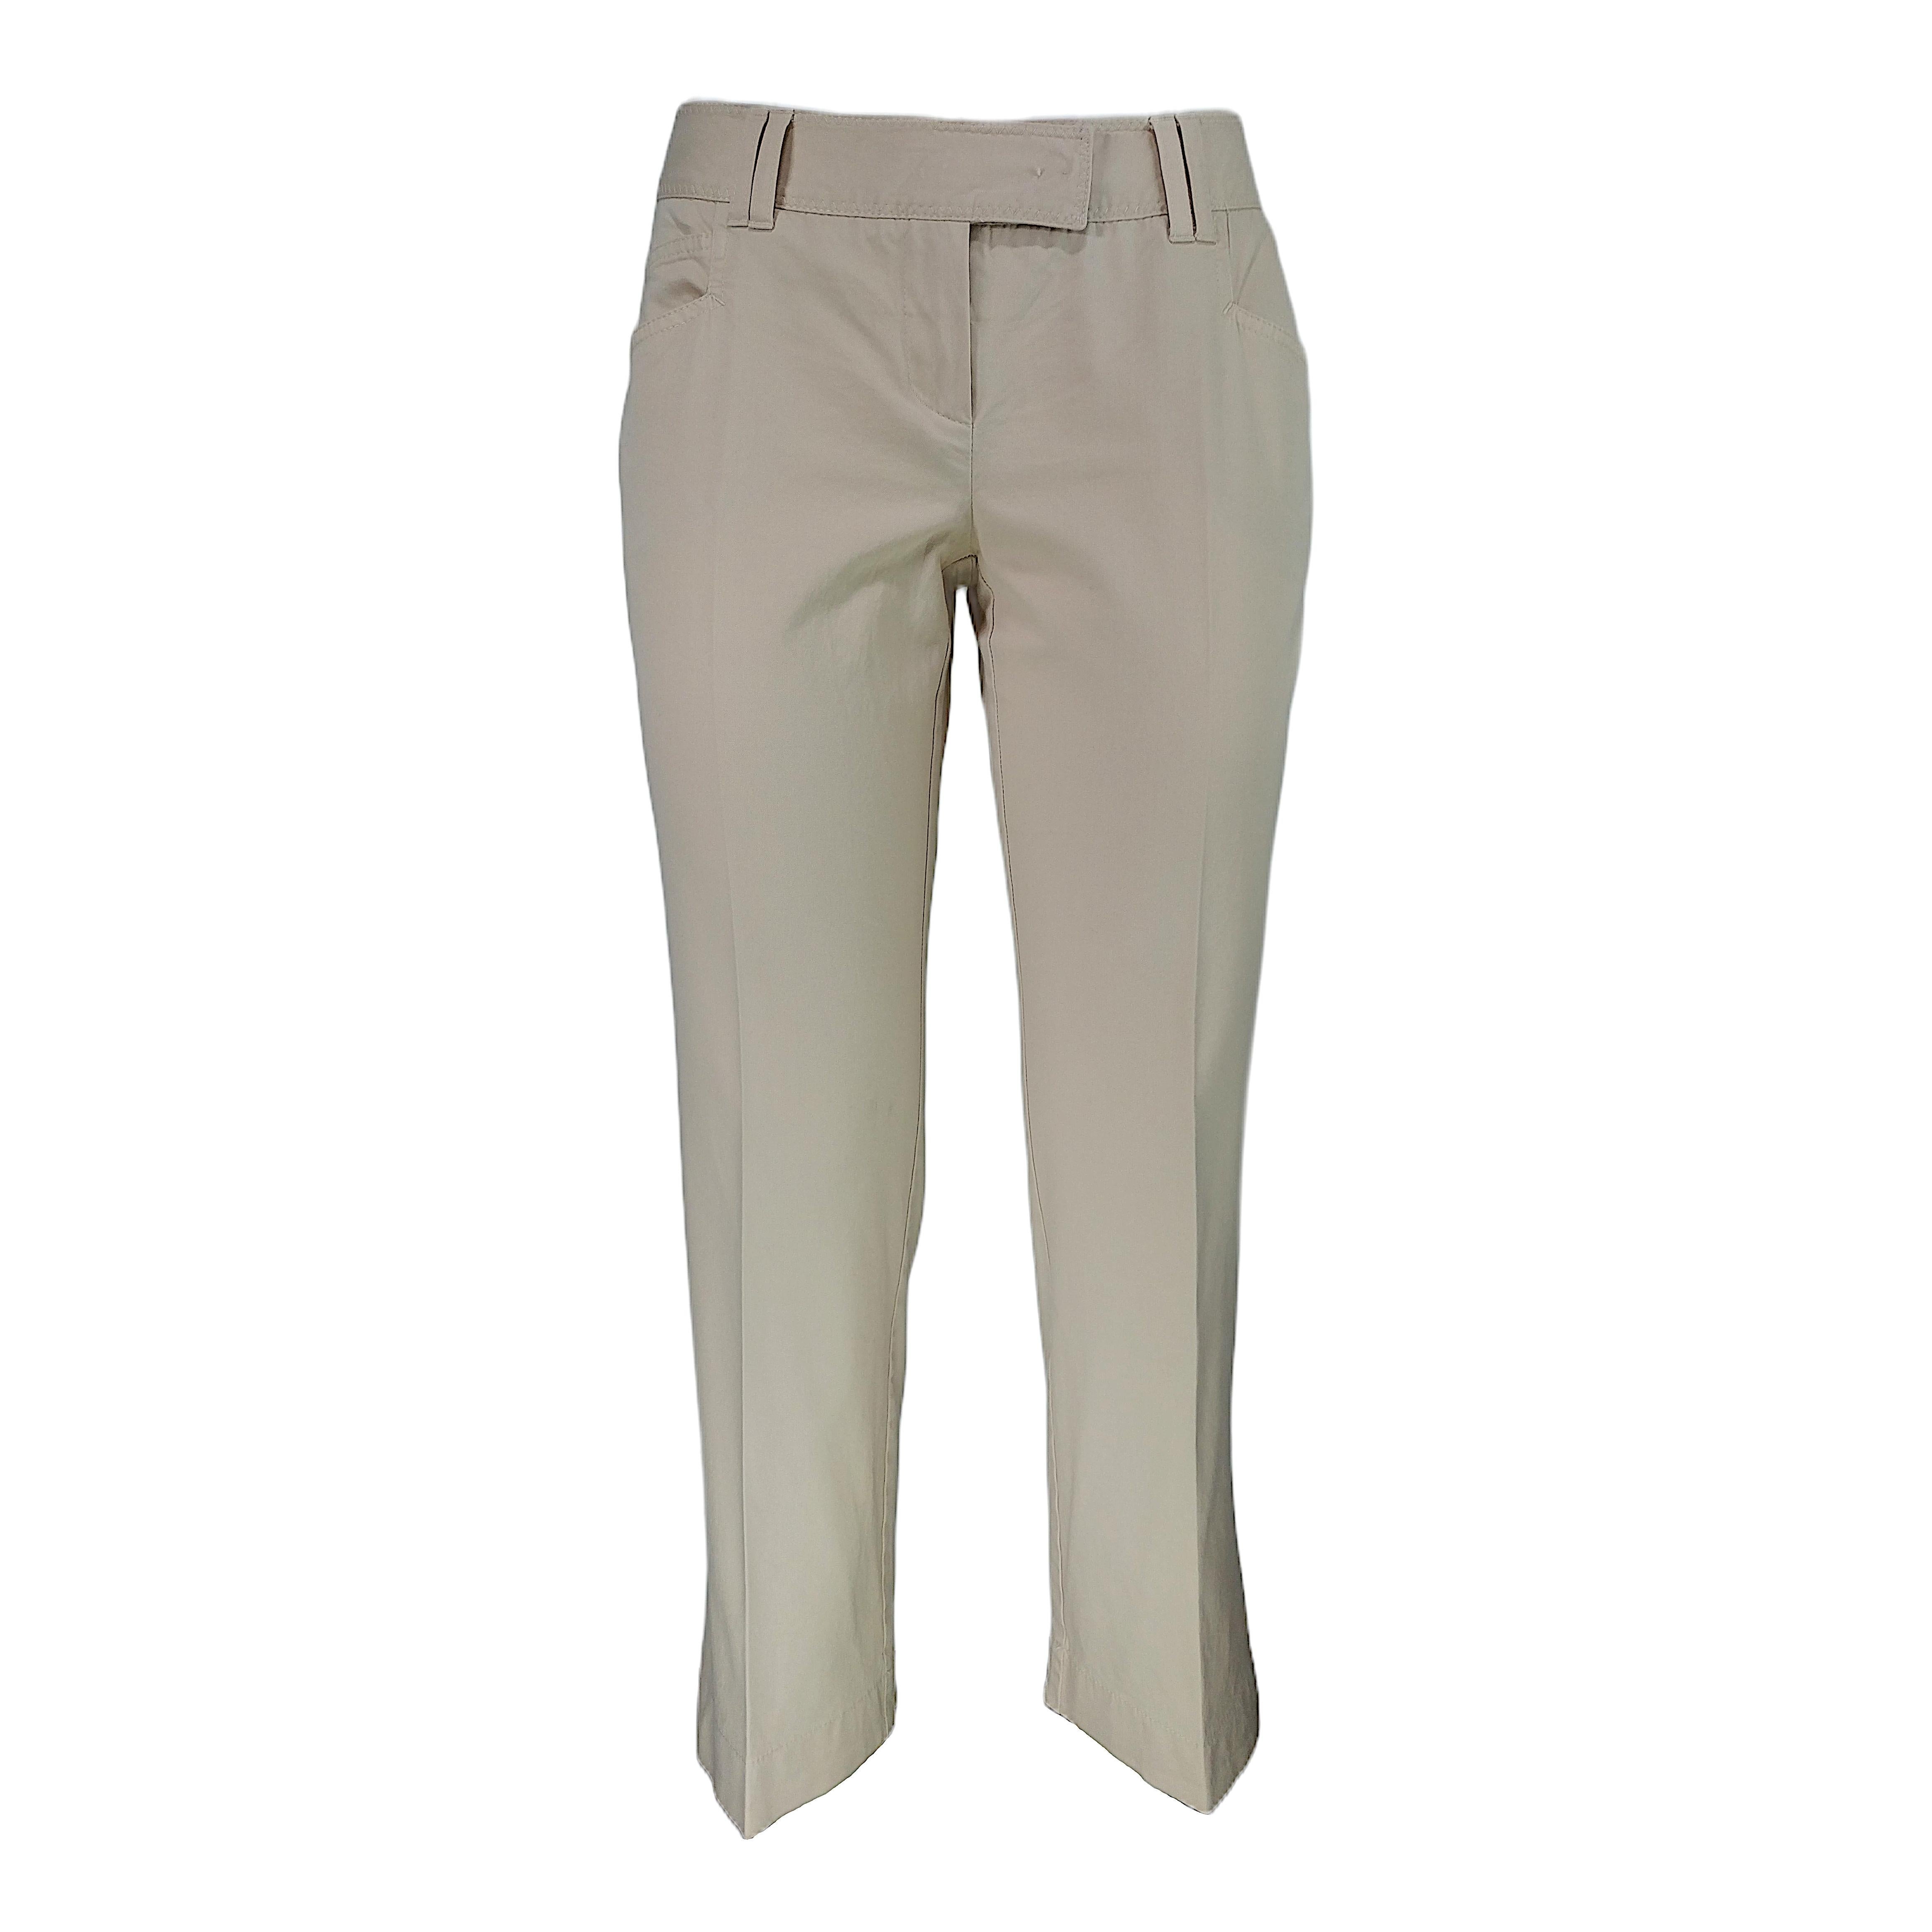 CHRISTIAN DIOR - Pantalones capri 7/8 vintage de algodón beige  Talla 6US 38EU